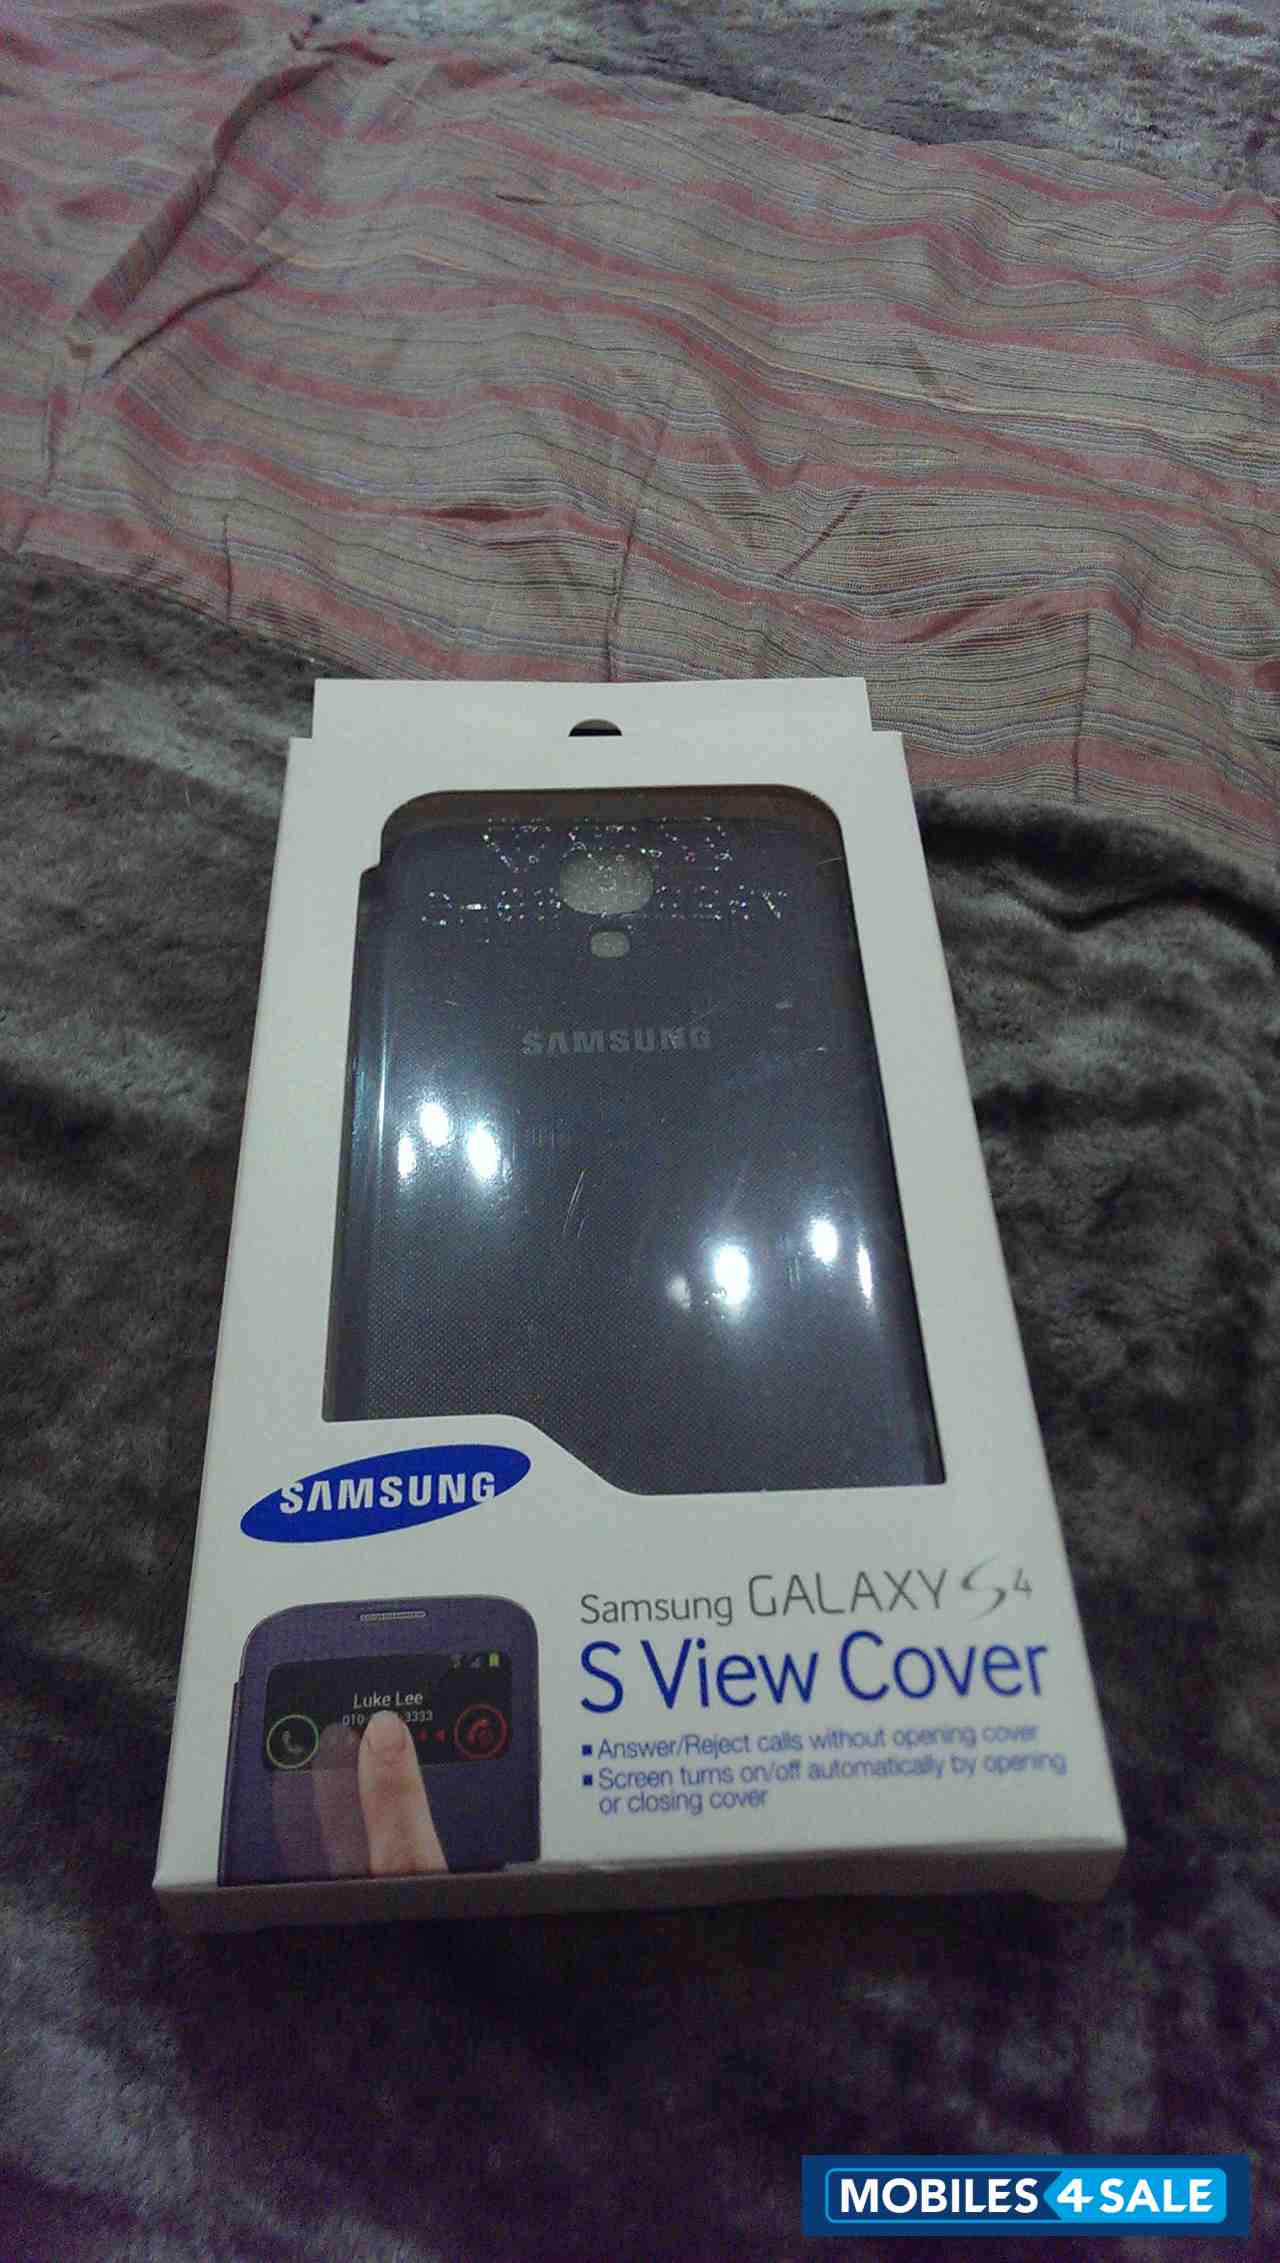 Grey Samsung Galaxy S4